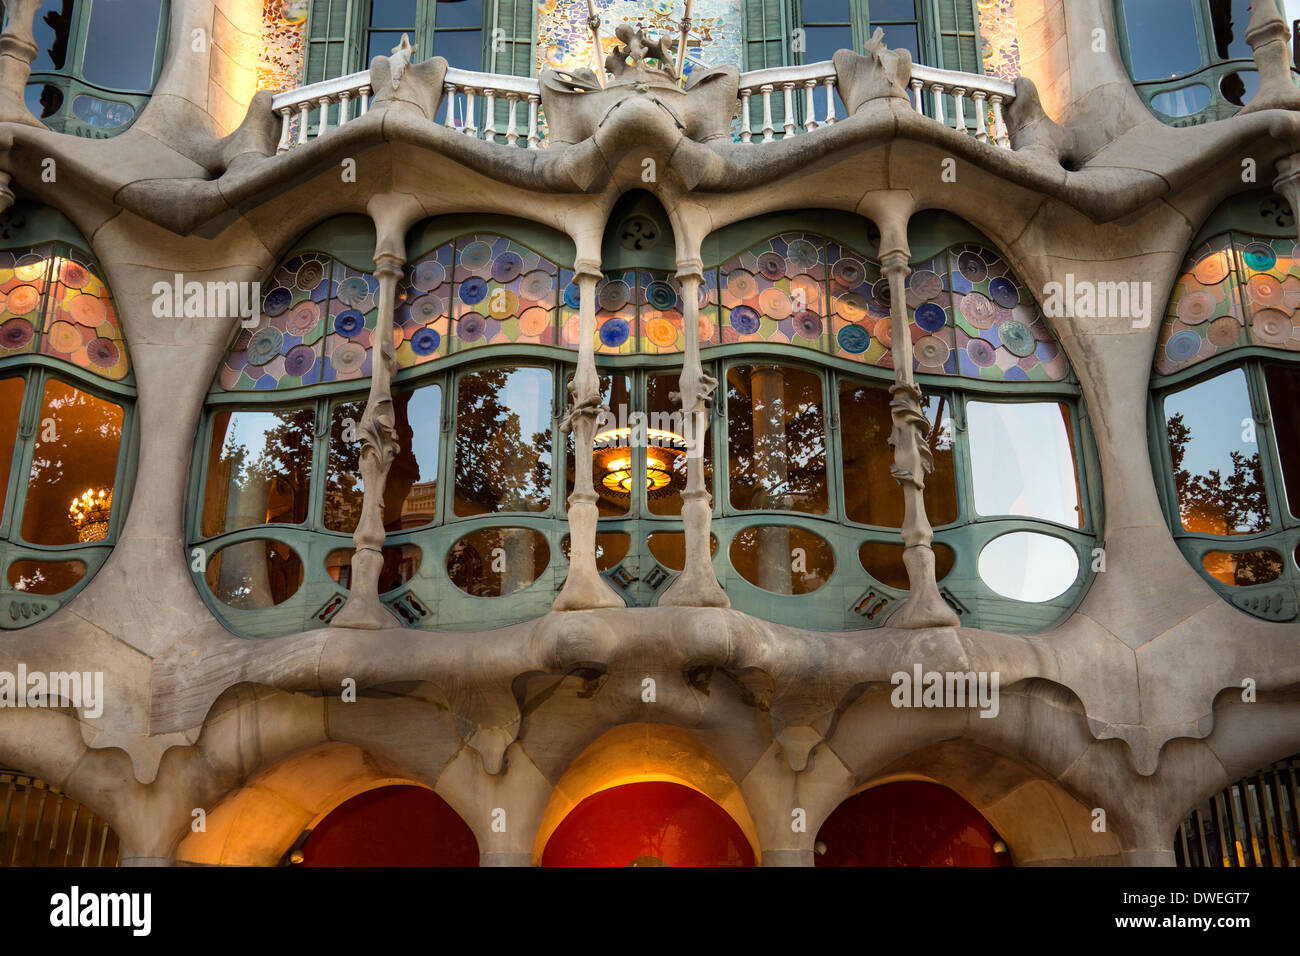 Détail sur la Casa Batlló de Gaudi dans le quartier de l'Eixample de Barcelone, dans la région de Catalogne en Espagne. Banque D'Images